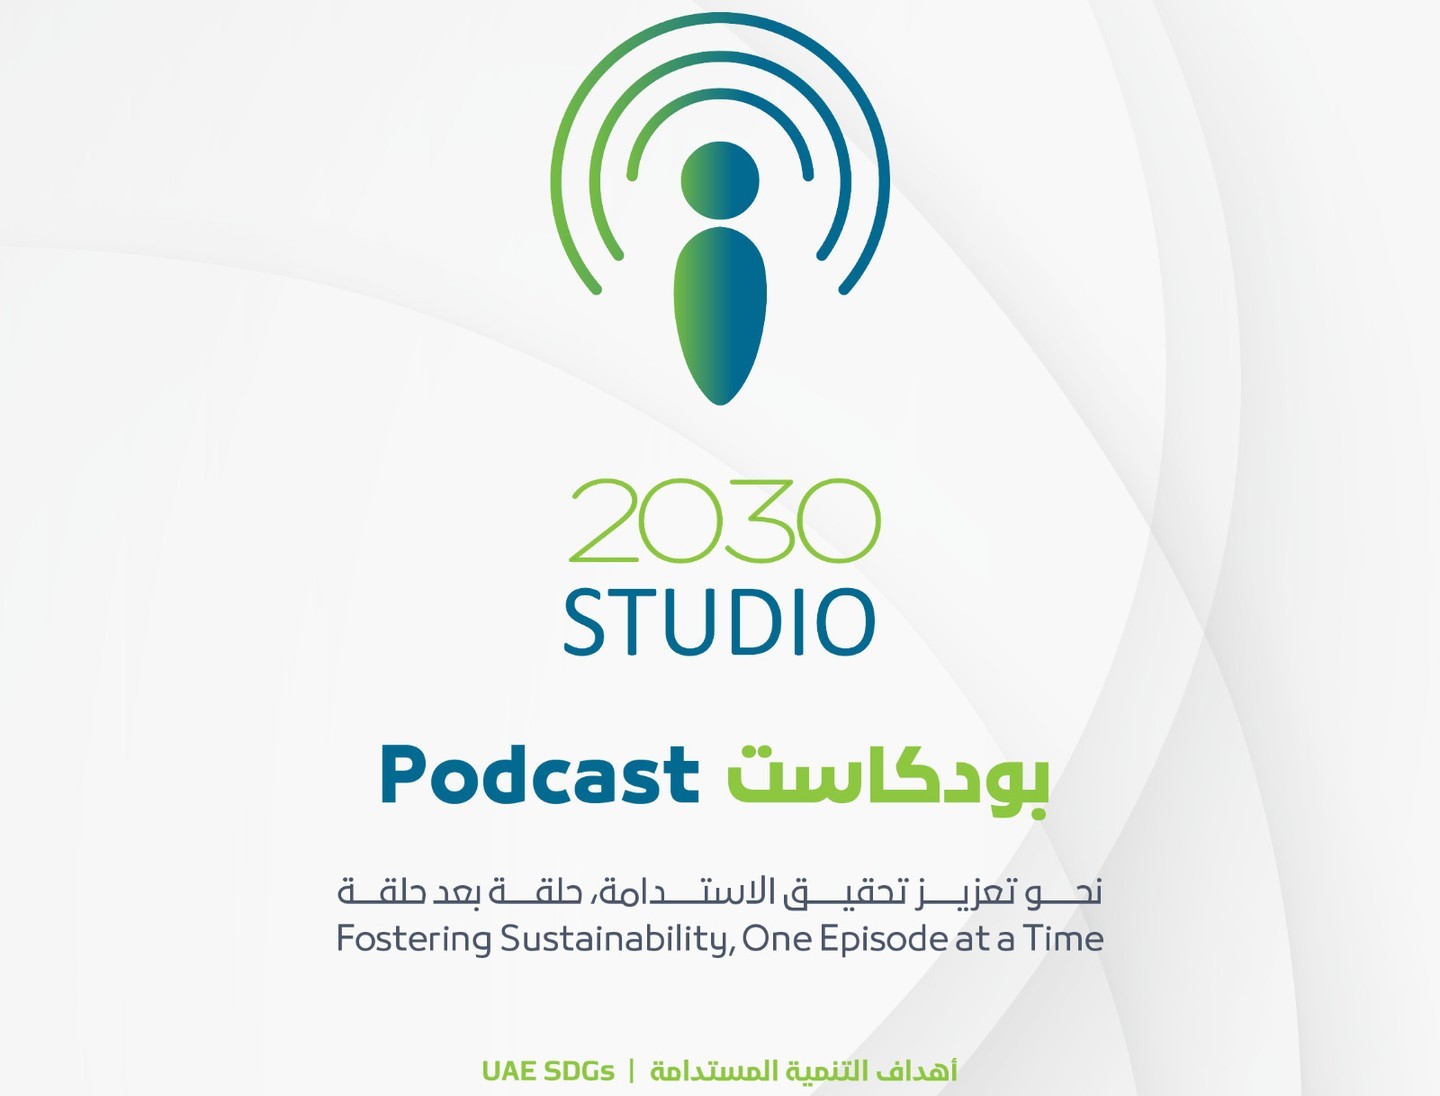 Studio 2030 podcast